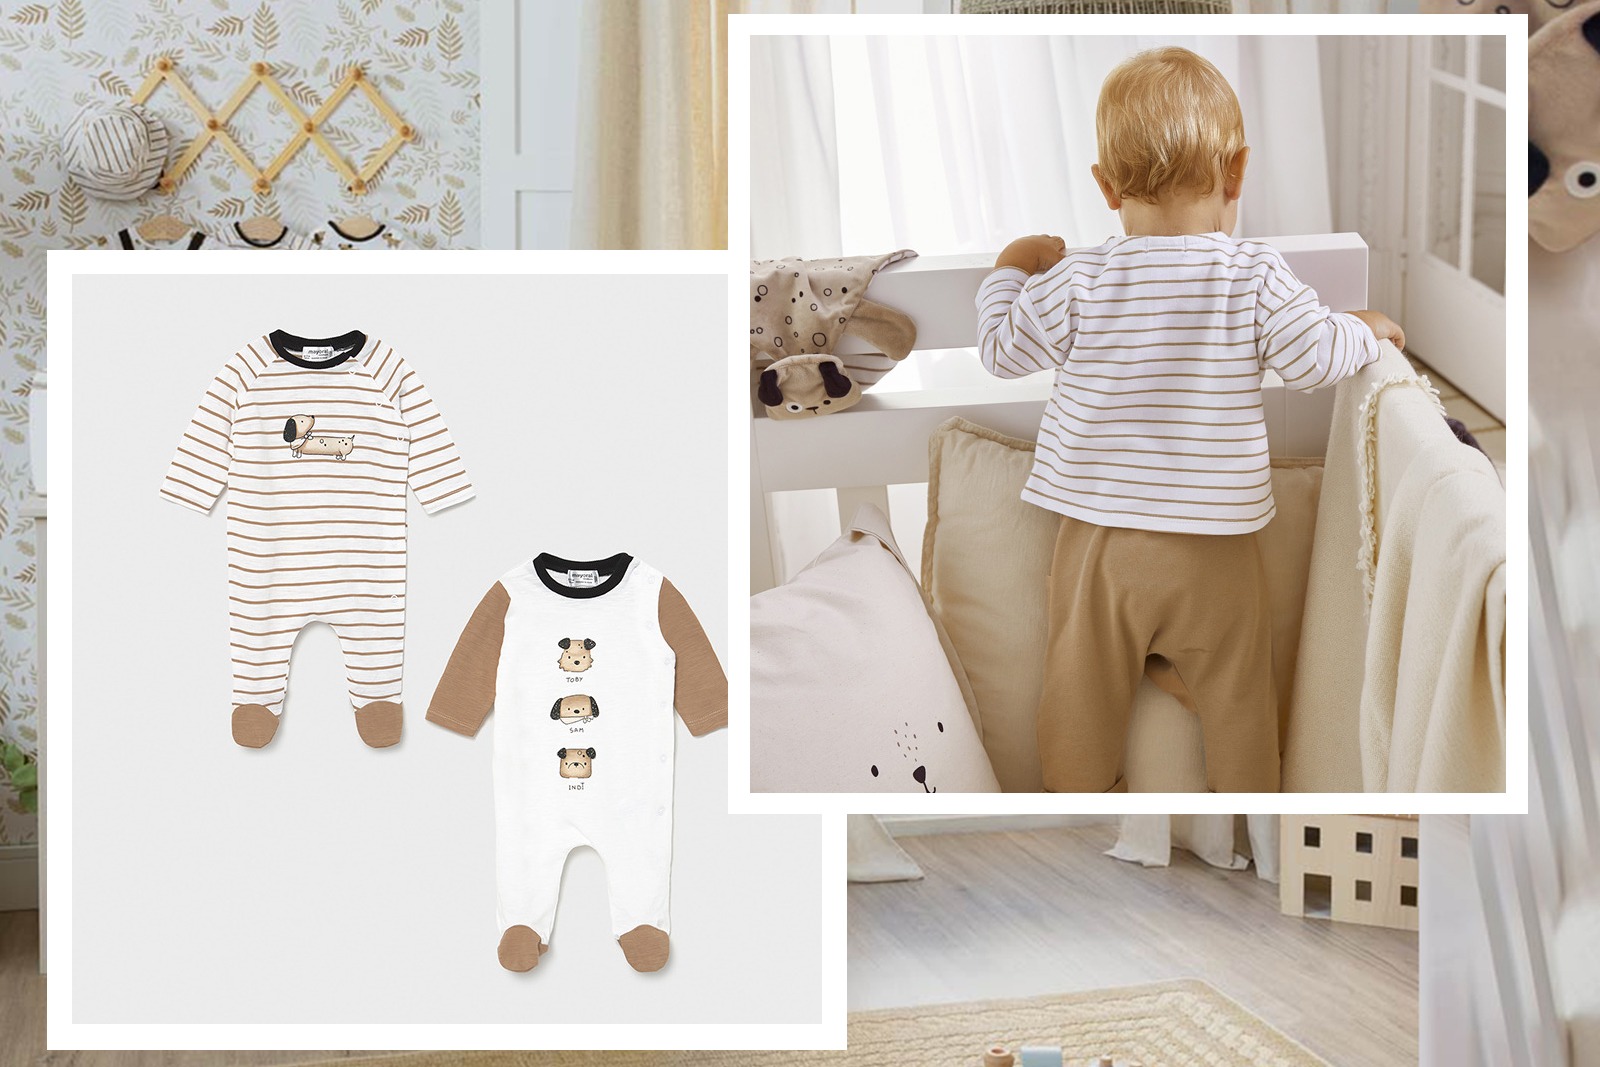 Jak ubierać dziecko do snu, gdy jest jeszcze malutkie? Podpowiadamy!